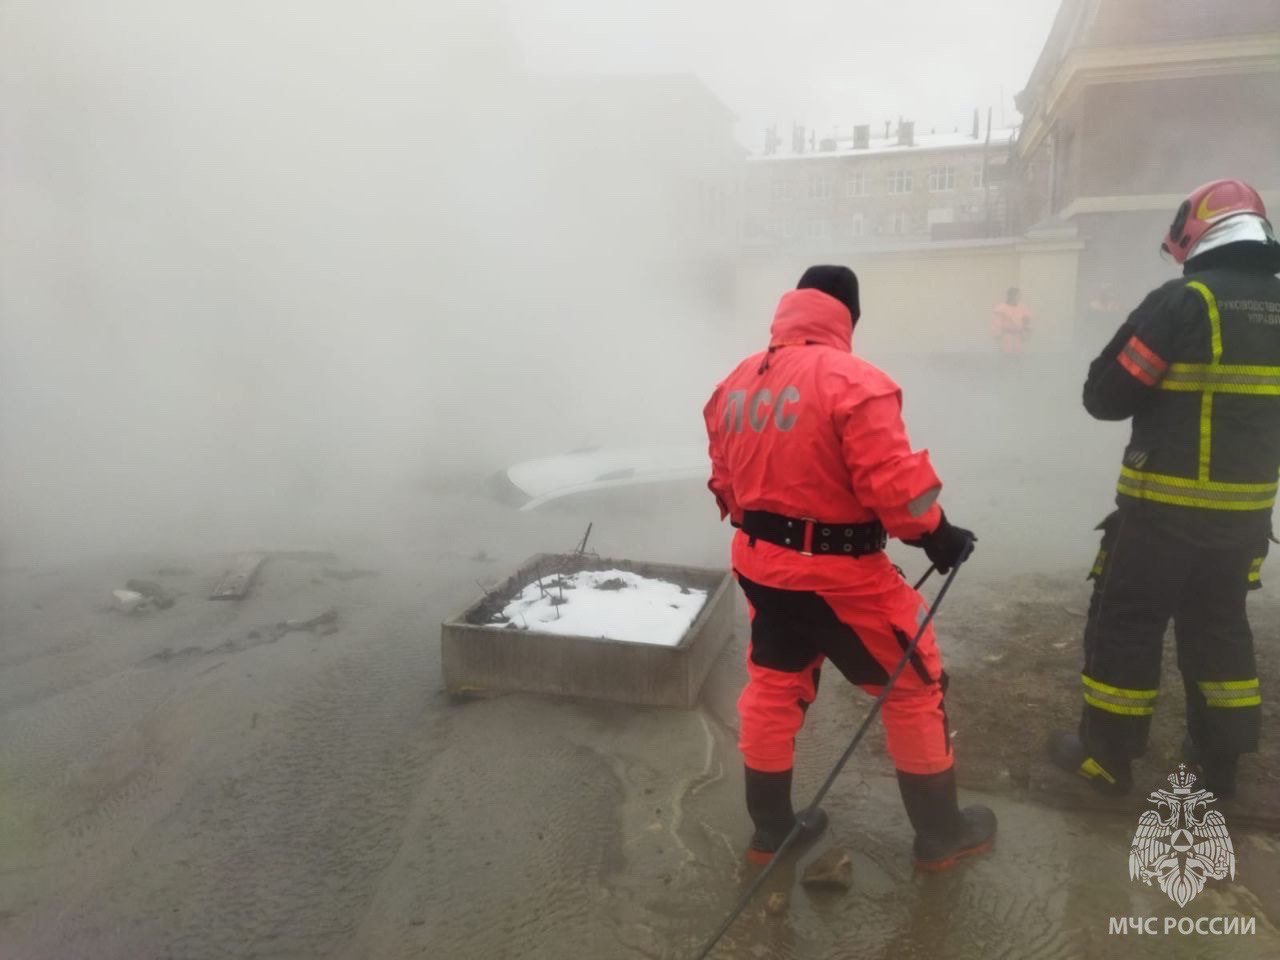 Спасатели МЧС России пришли на помощь пассажирам автомобиля, провалившегося под асфальт в Адмиралтейском районе Санкт-Петербурга